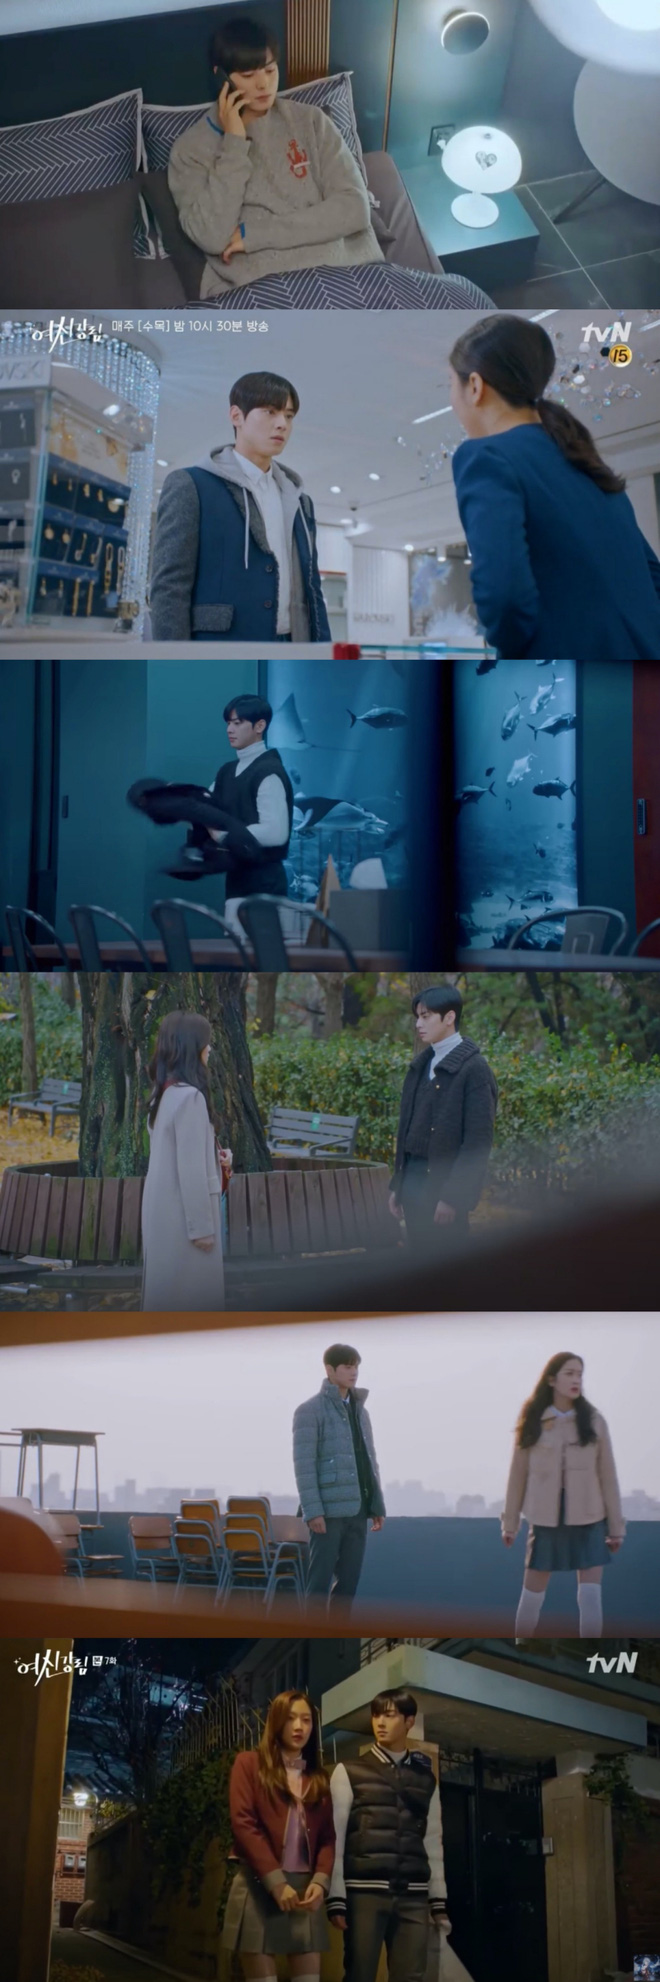 4 sao Hàn và tủ đồ siêu chán trên phim: Cha Eun Woo như mượn đồ của bố, Han So Hee kém sang hẳn luôn! - Ảnh 8.